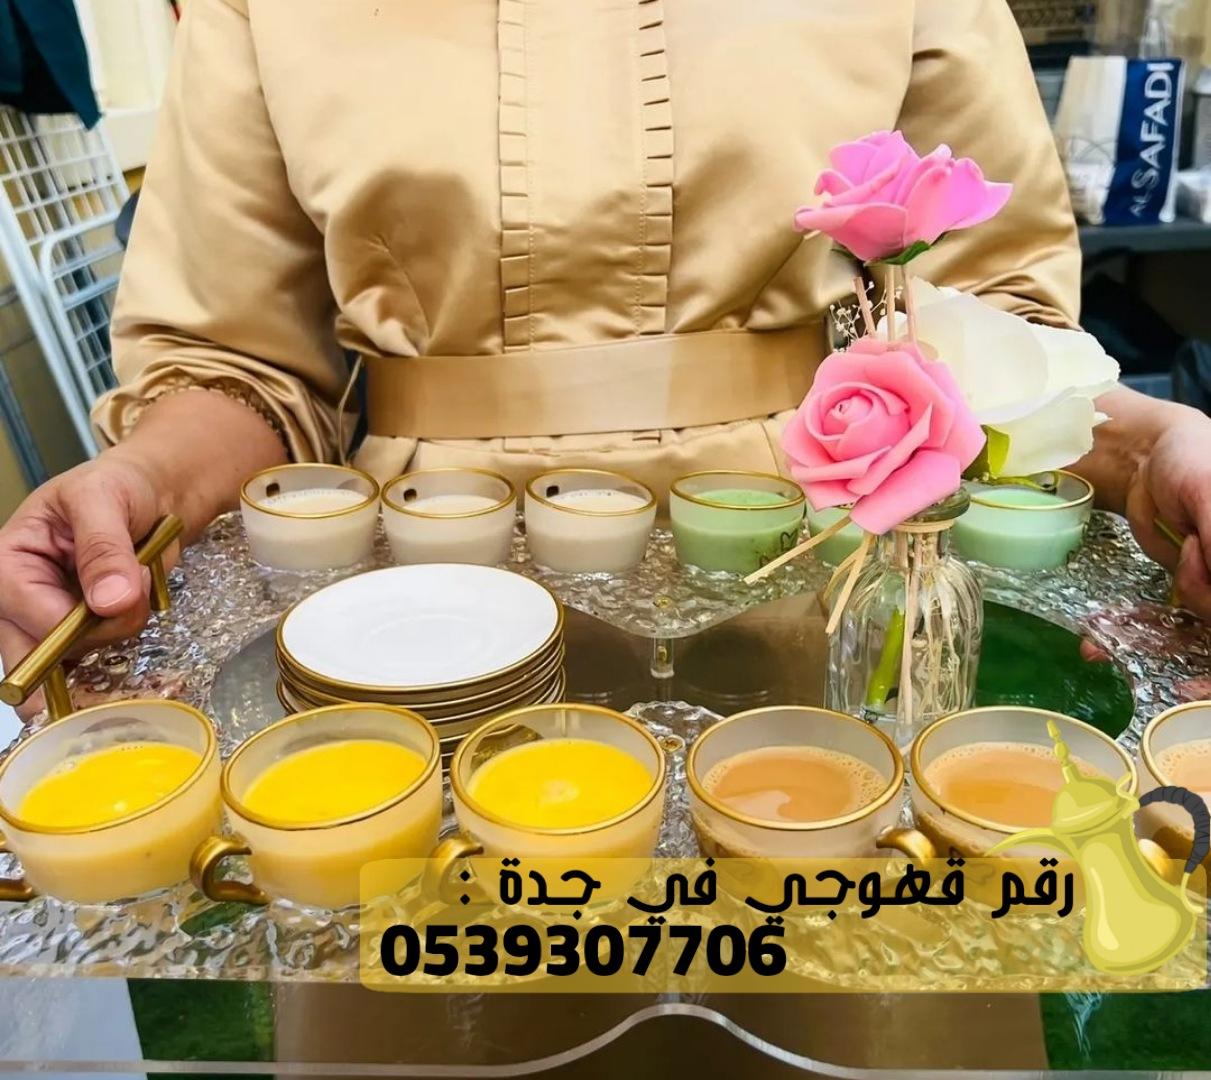 صبابين قهوه و مباشرين في جدة, 0539307706 428841500